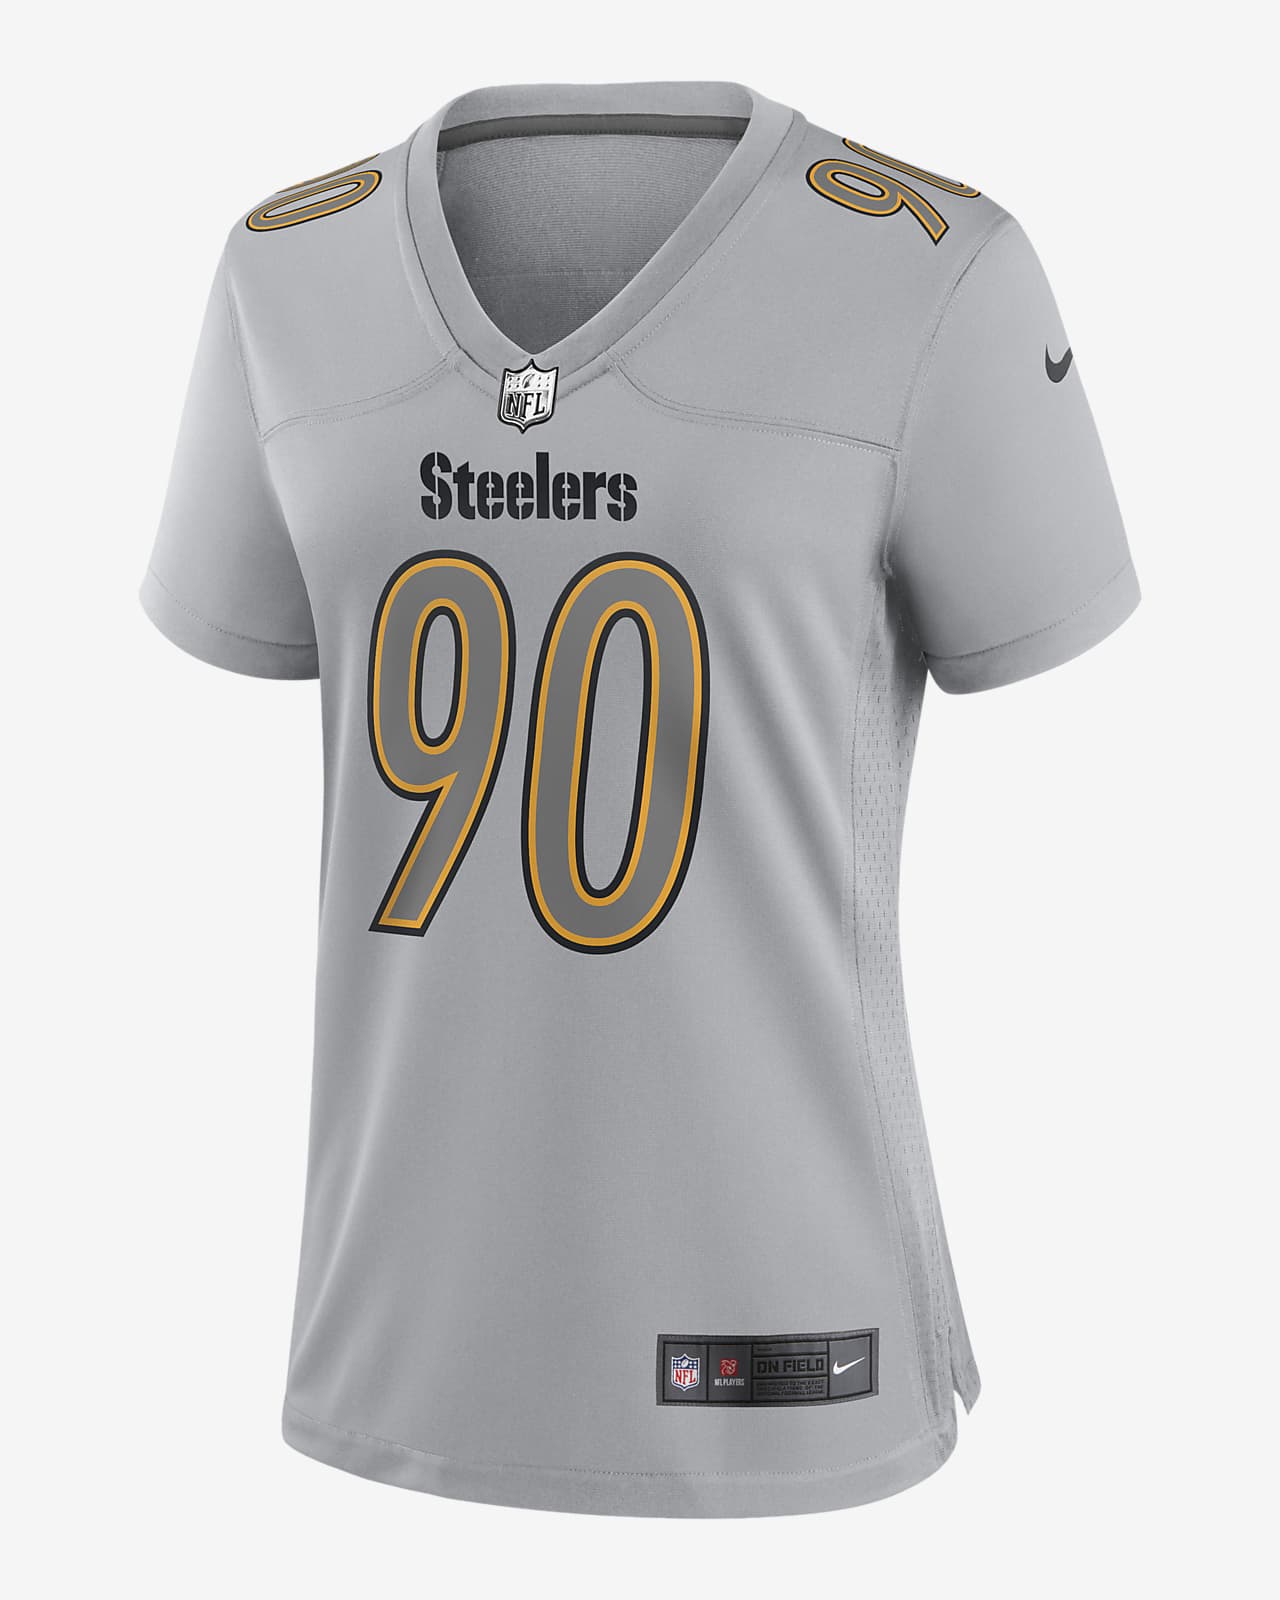 NFL Pittsburgh Steelers Atmosphere (T.J. Watt) Women's Fashion Football Jersey